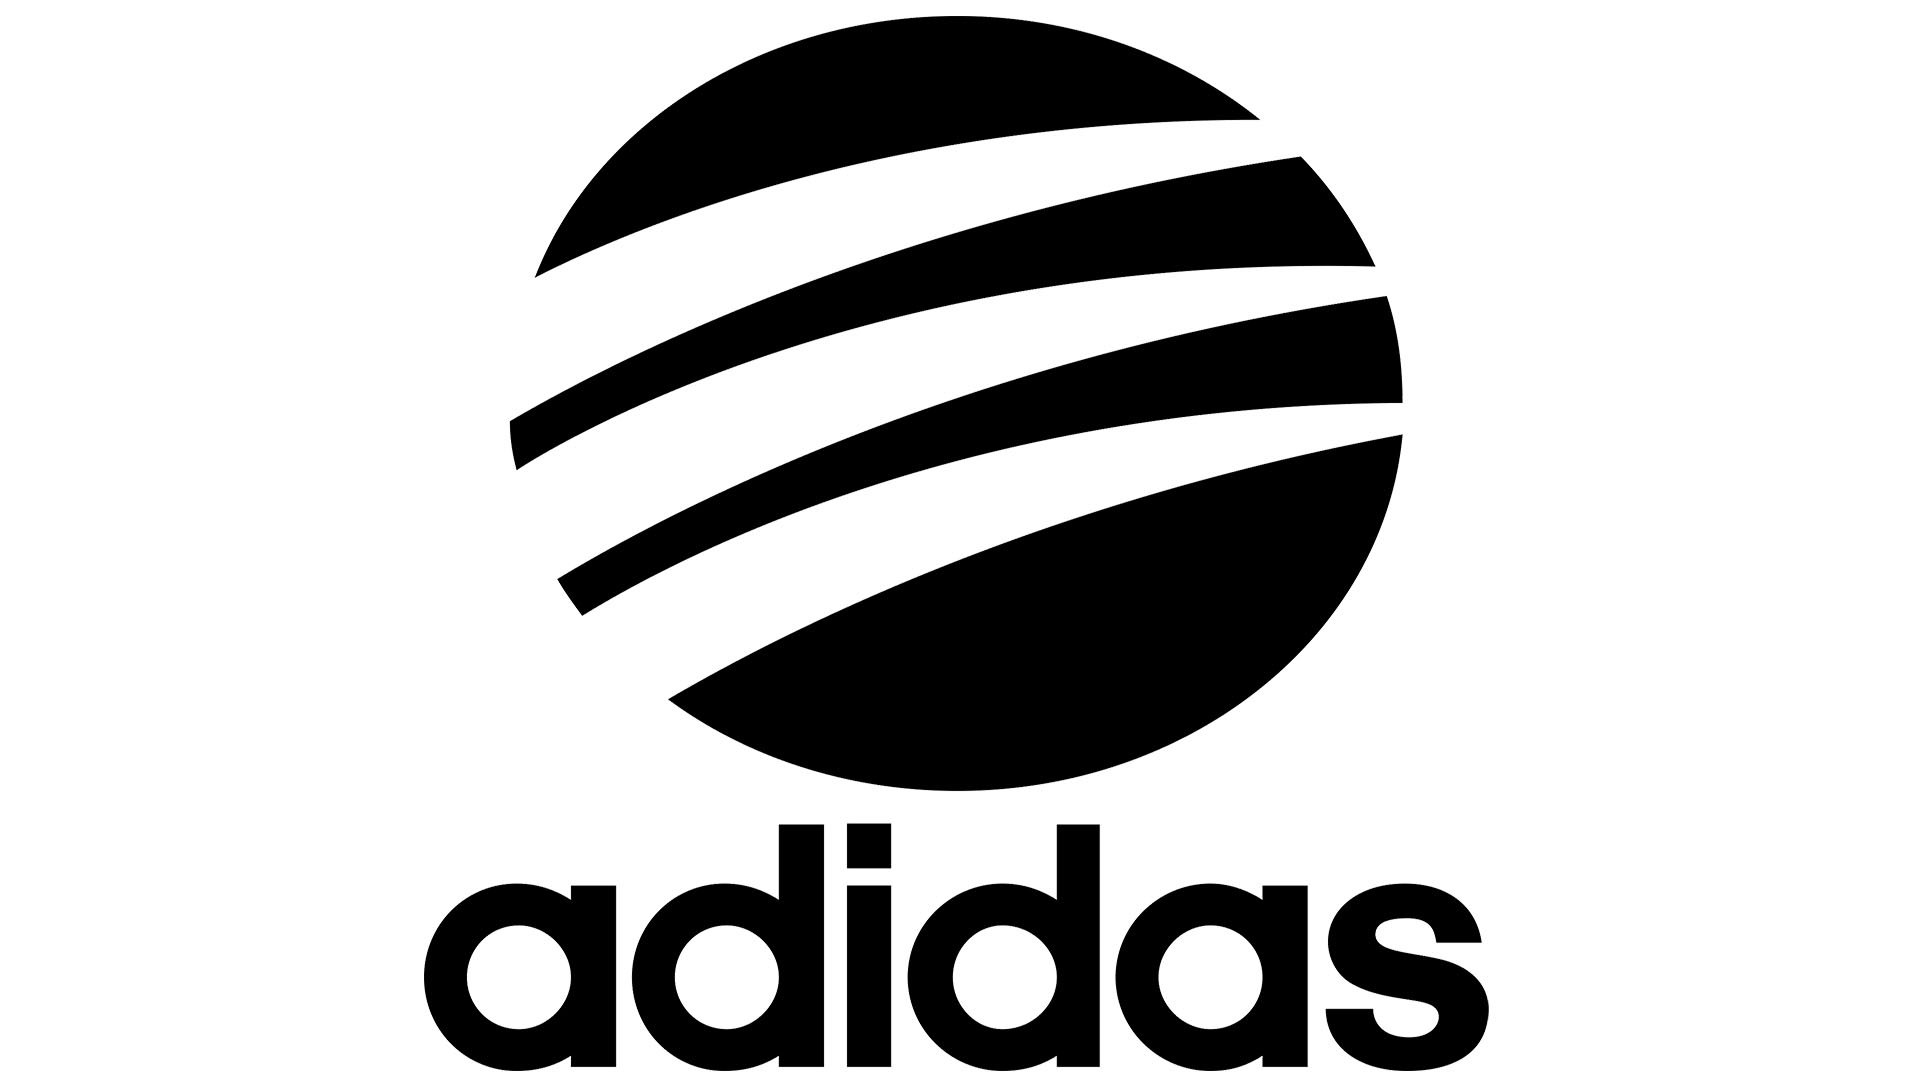 logos de la marca adidas